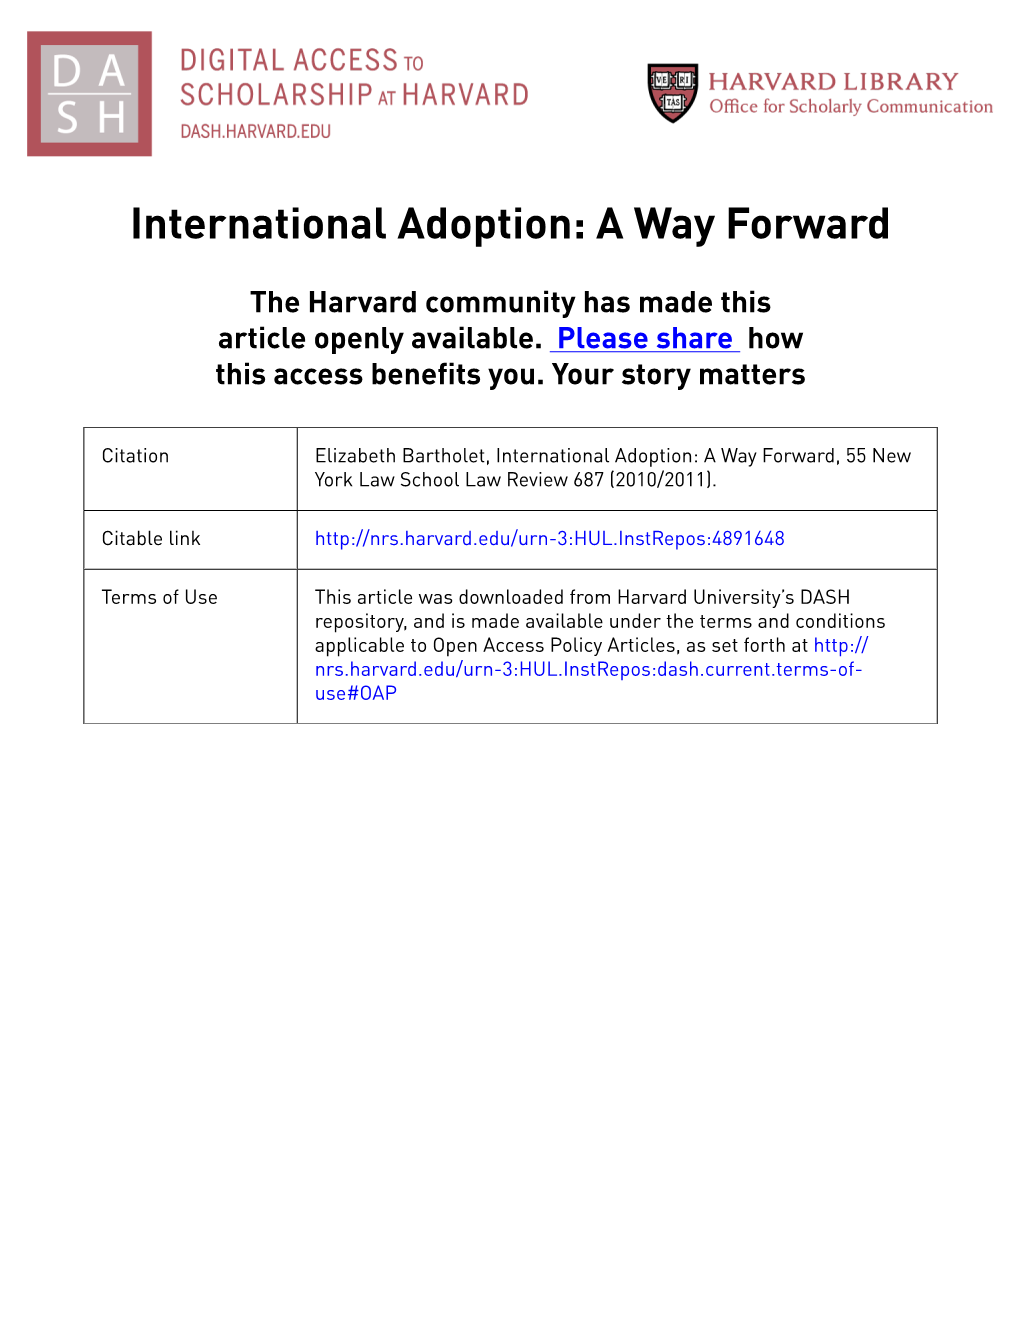 International Adoption: a Way Forward